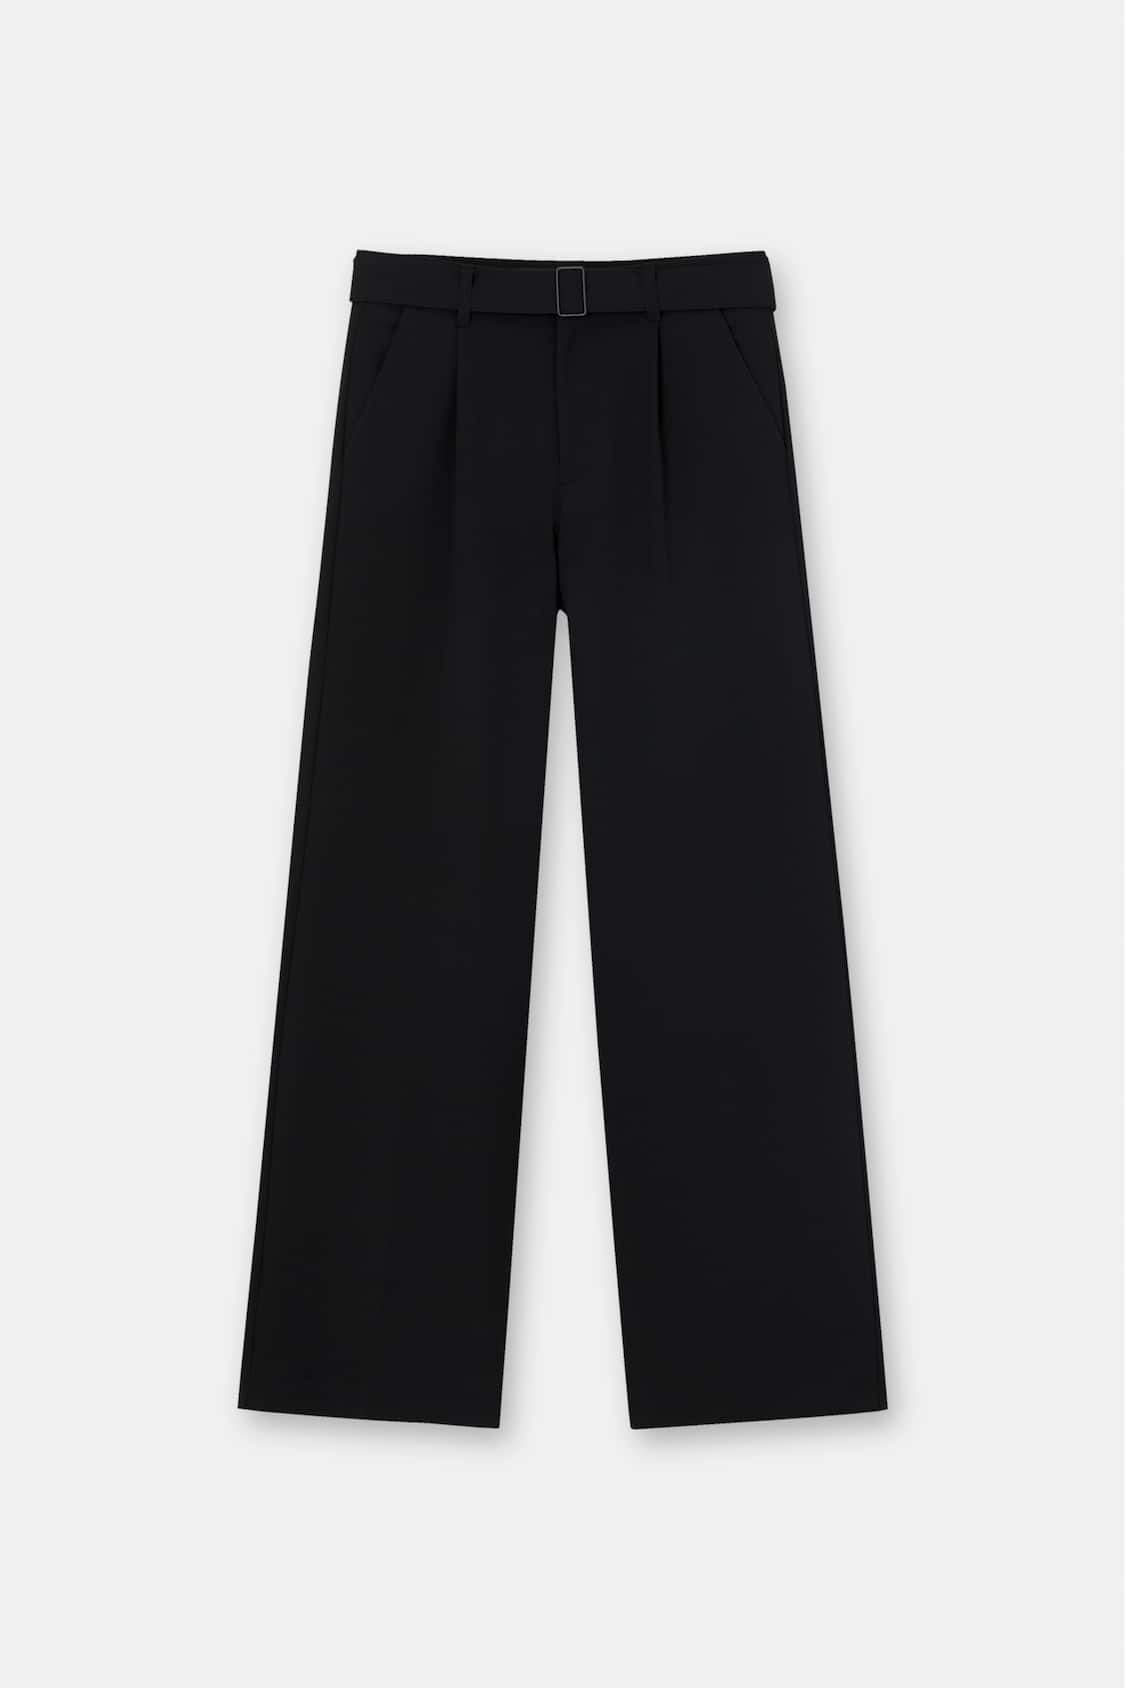 6 pantalones elegantes con cintura elástica de Pull&Bear que no aprietan y  estilizan cualquier look